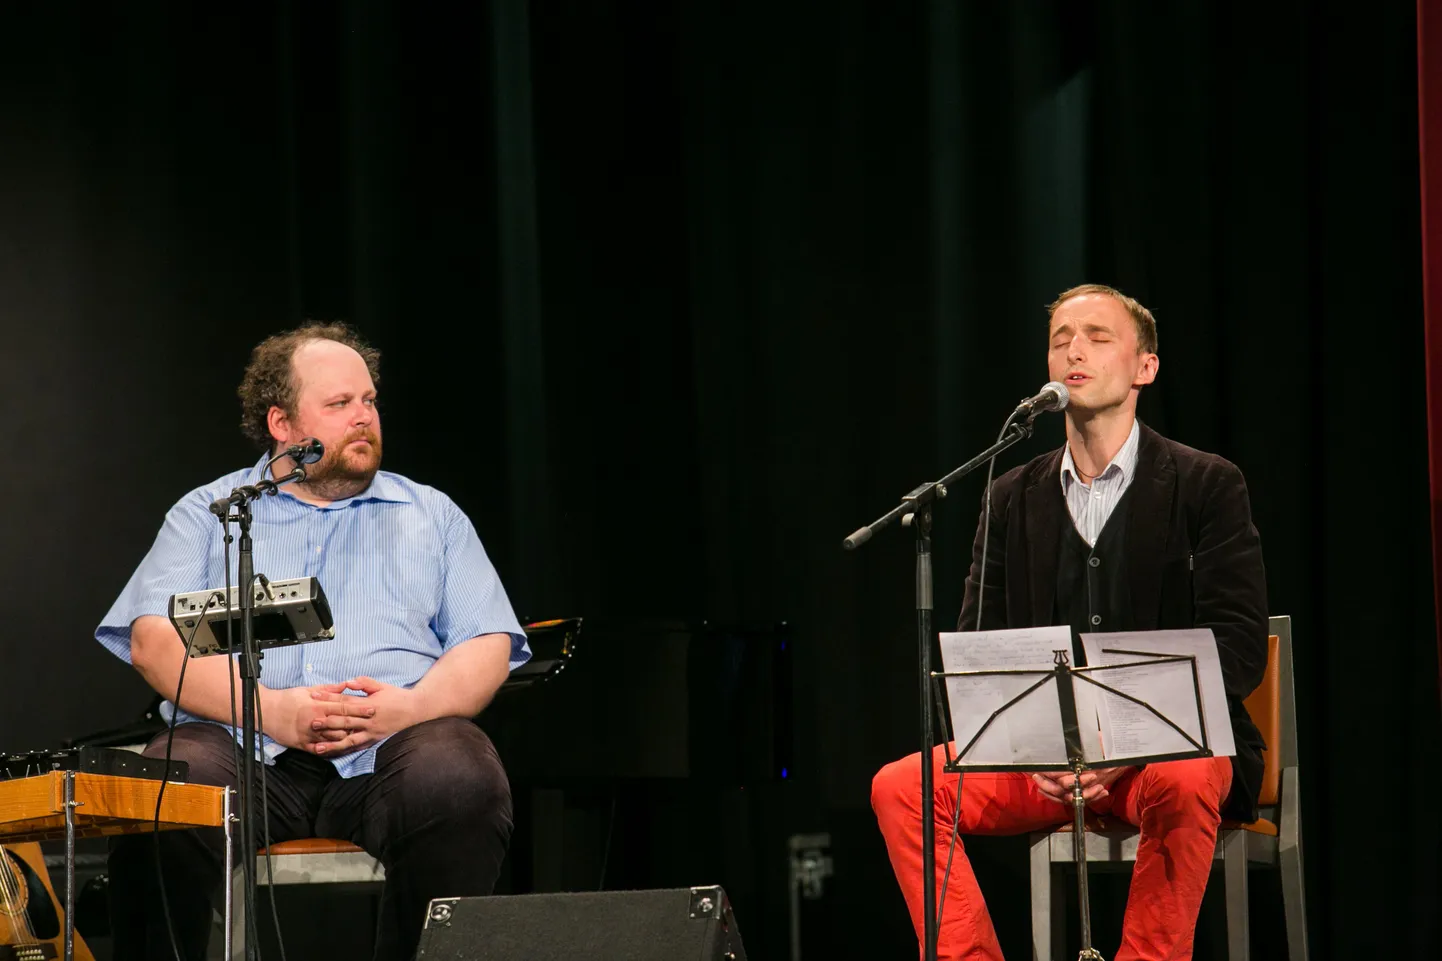 Kevadisest Jaan Pehki juubelikontserdist kasvas välja jõulukontsertide sari, milles lööb kaasa Märt Avandigi.